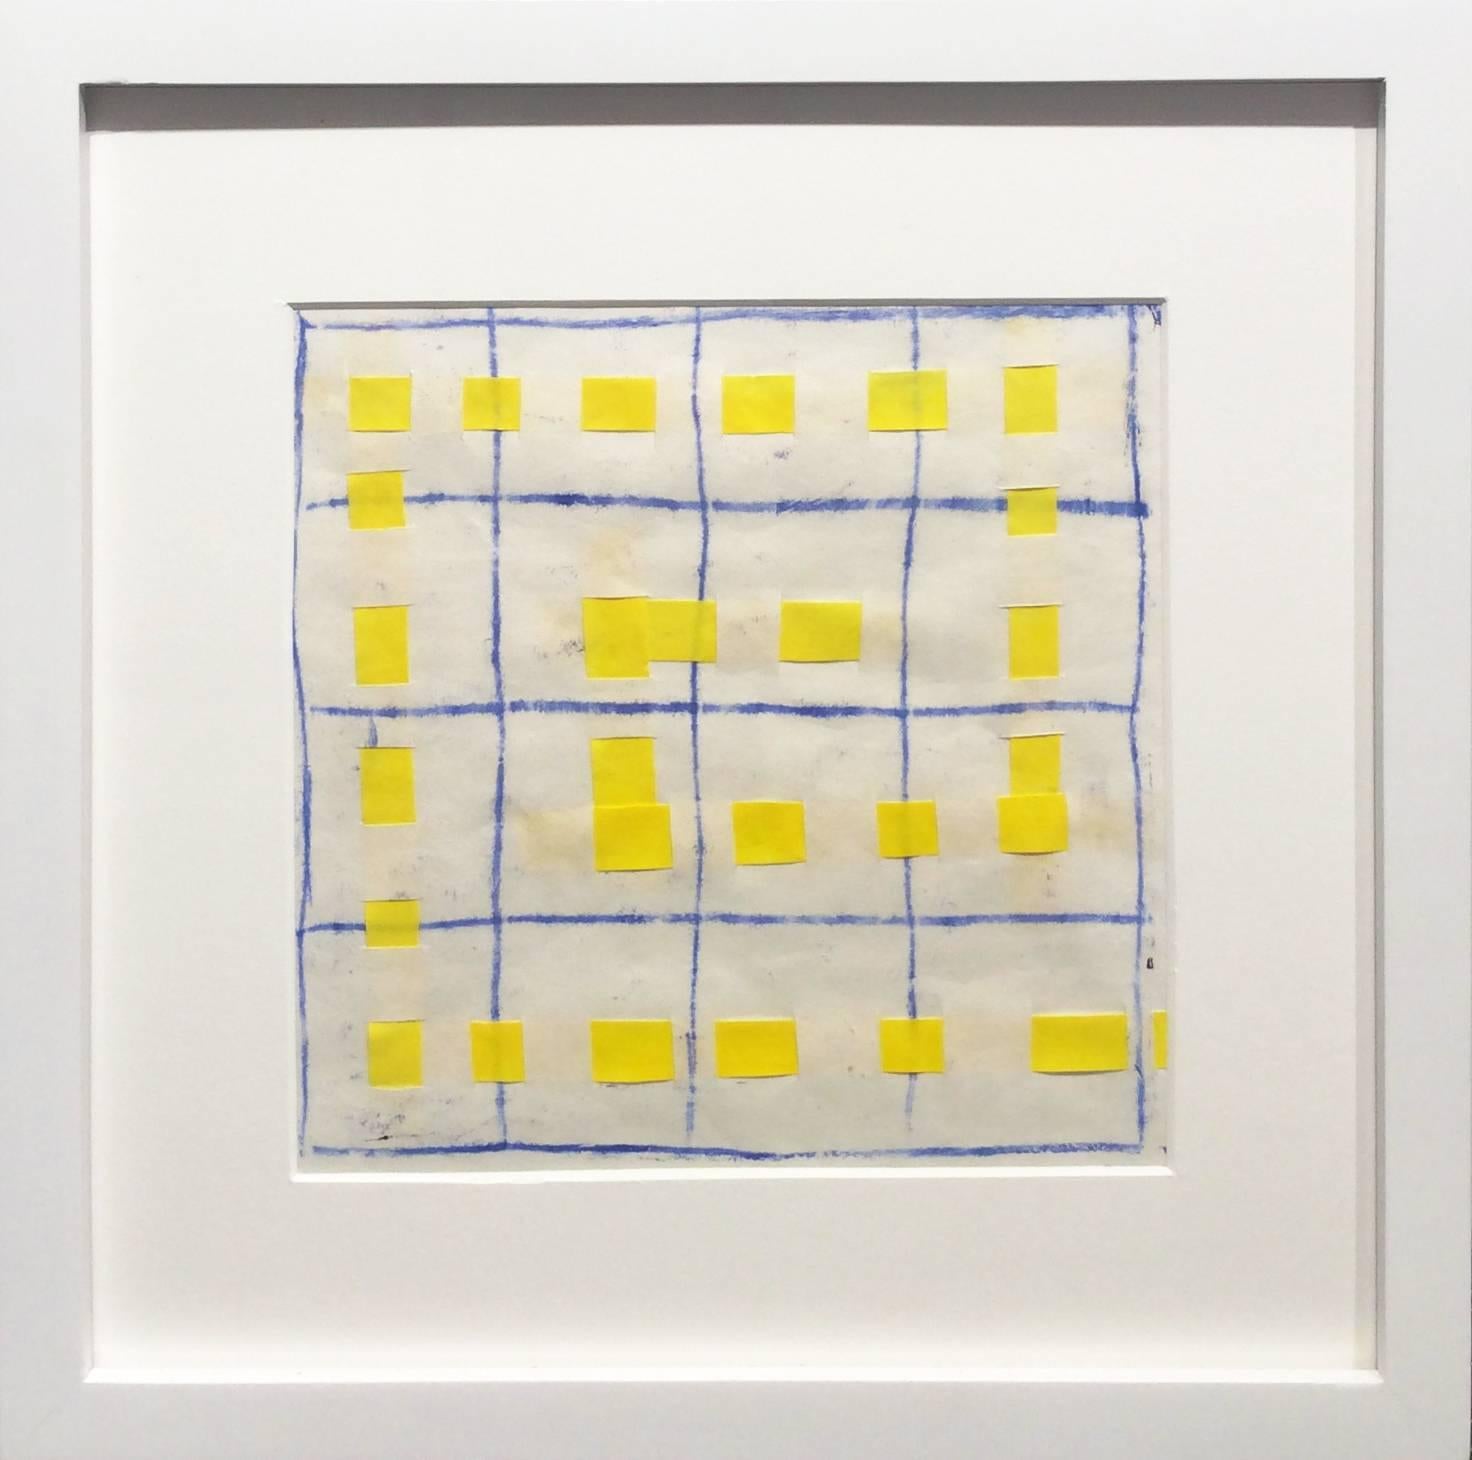 16B: Modernes, abstraktes Gemälde in Blau, Weiß und Gelb mit Gittermuster in weißem Rahmen – Painting von Donise English